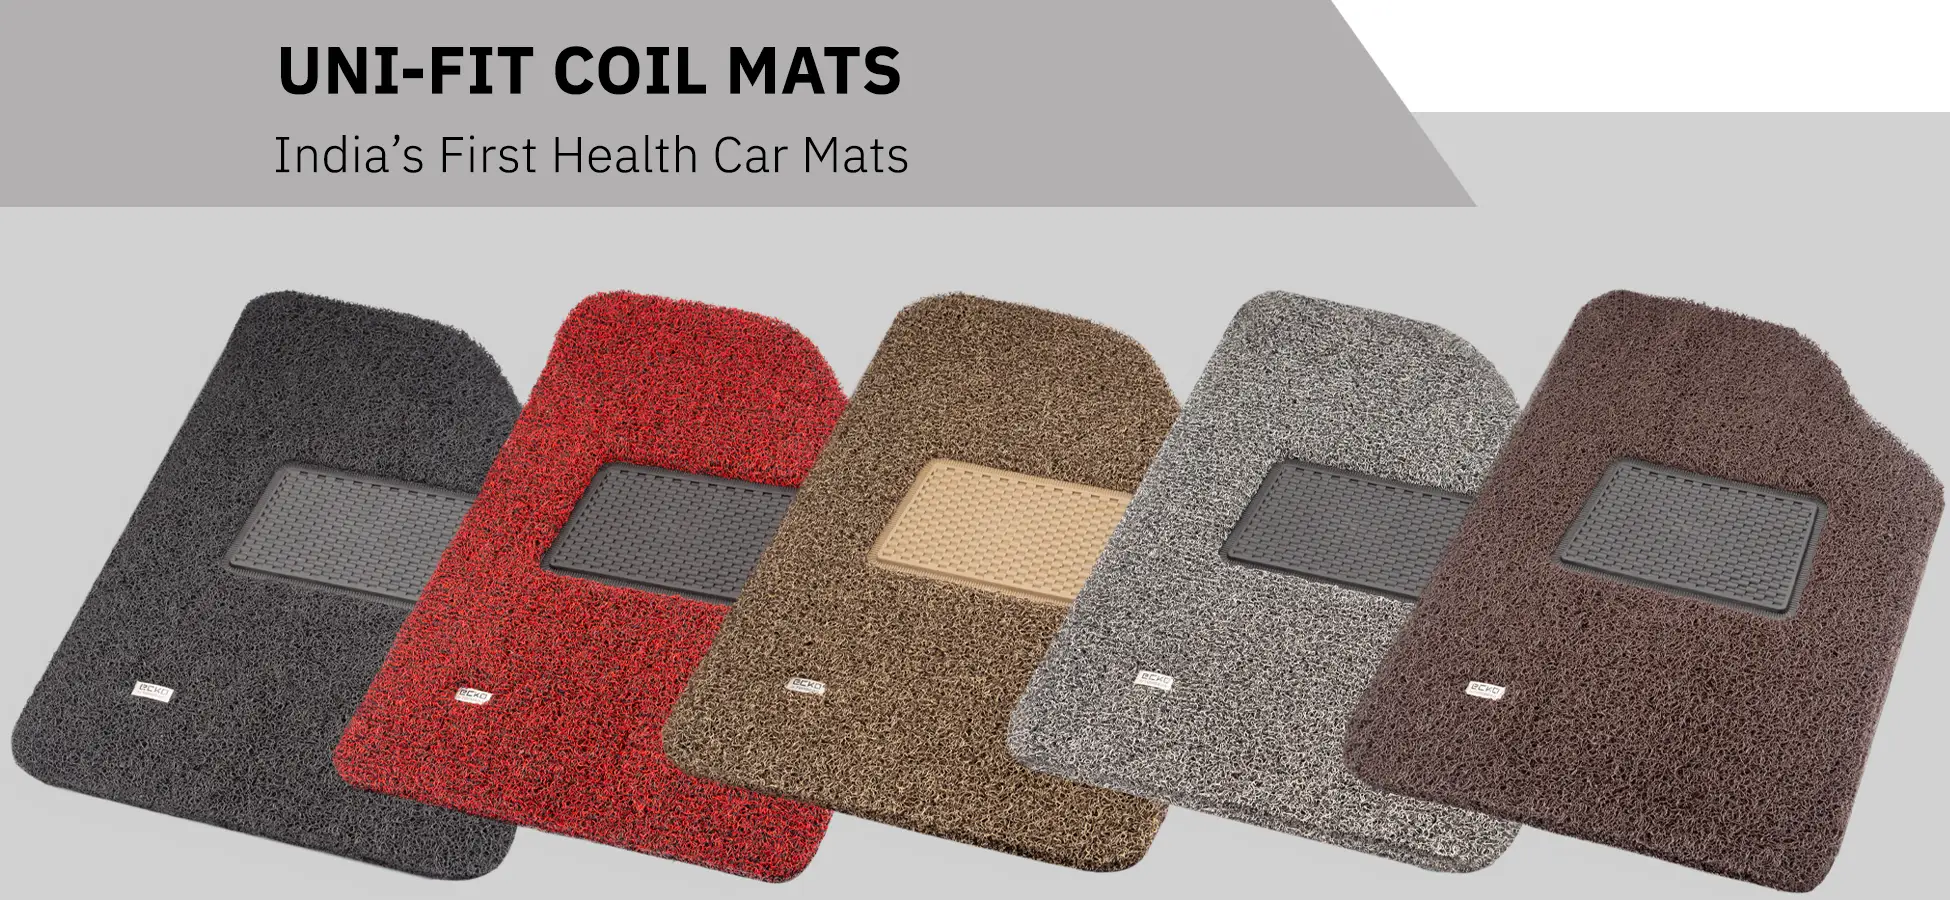 top gear uni-fit mats - universal fit car floor mats